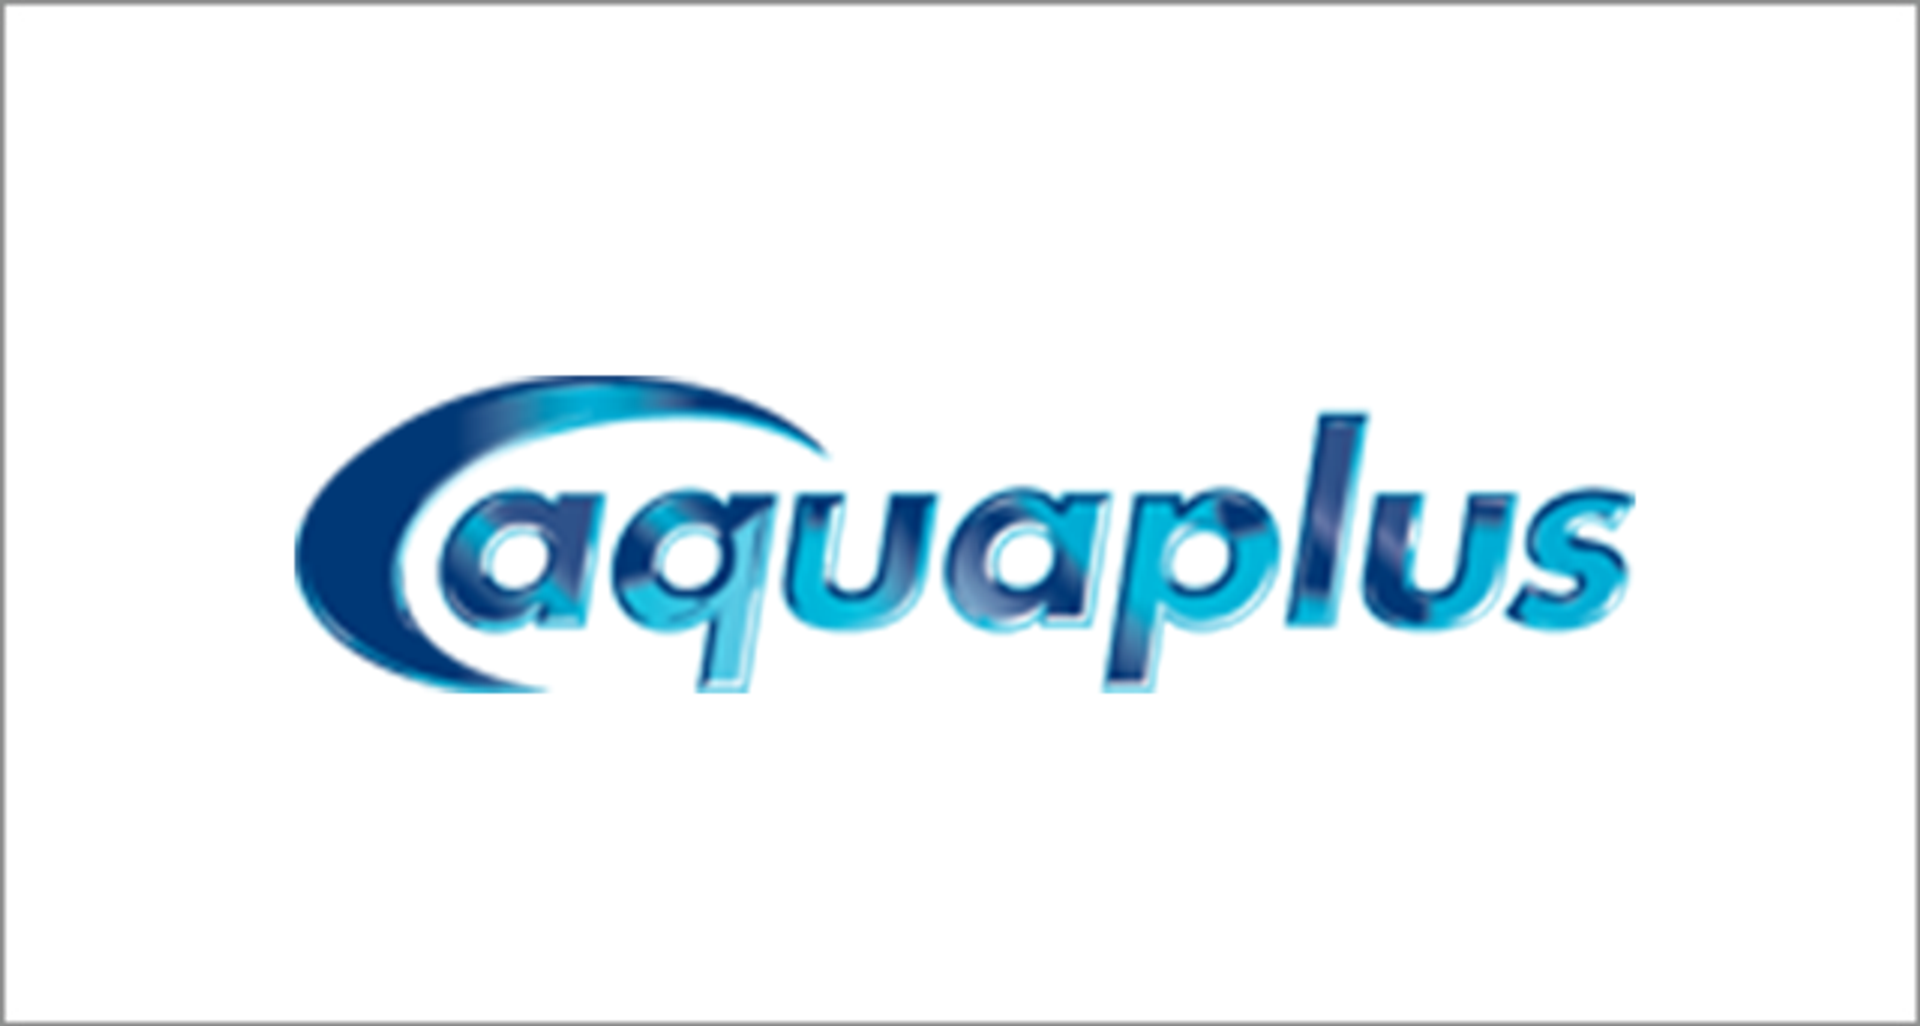 Aqua Plus